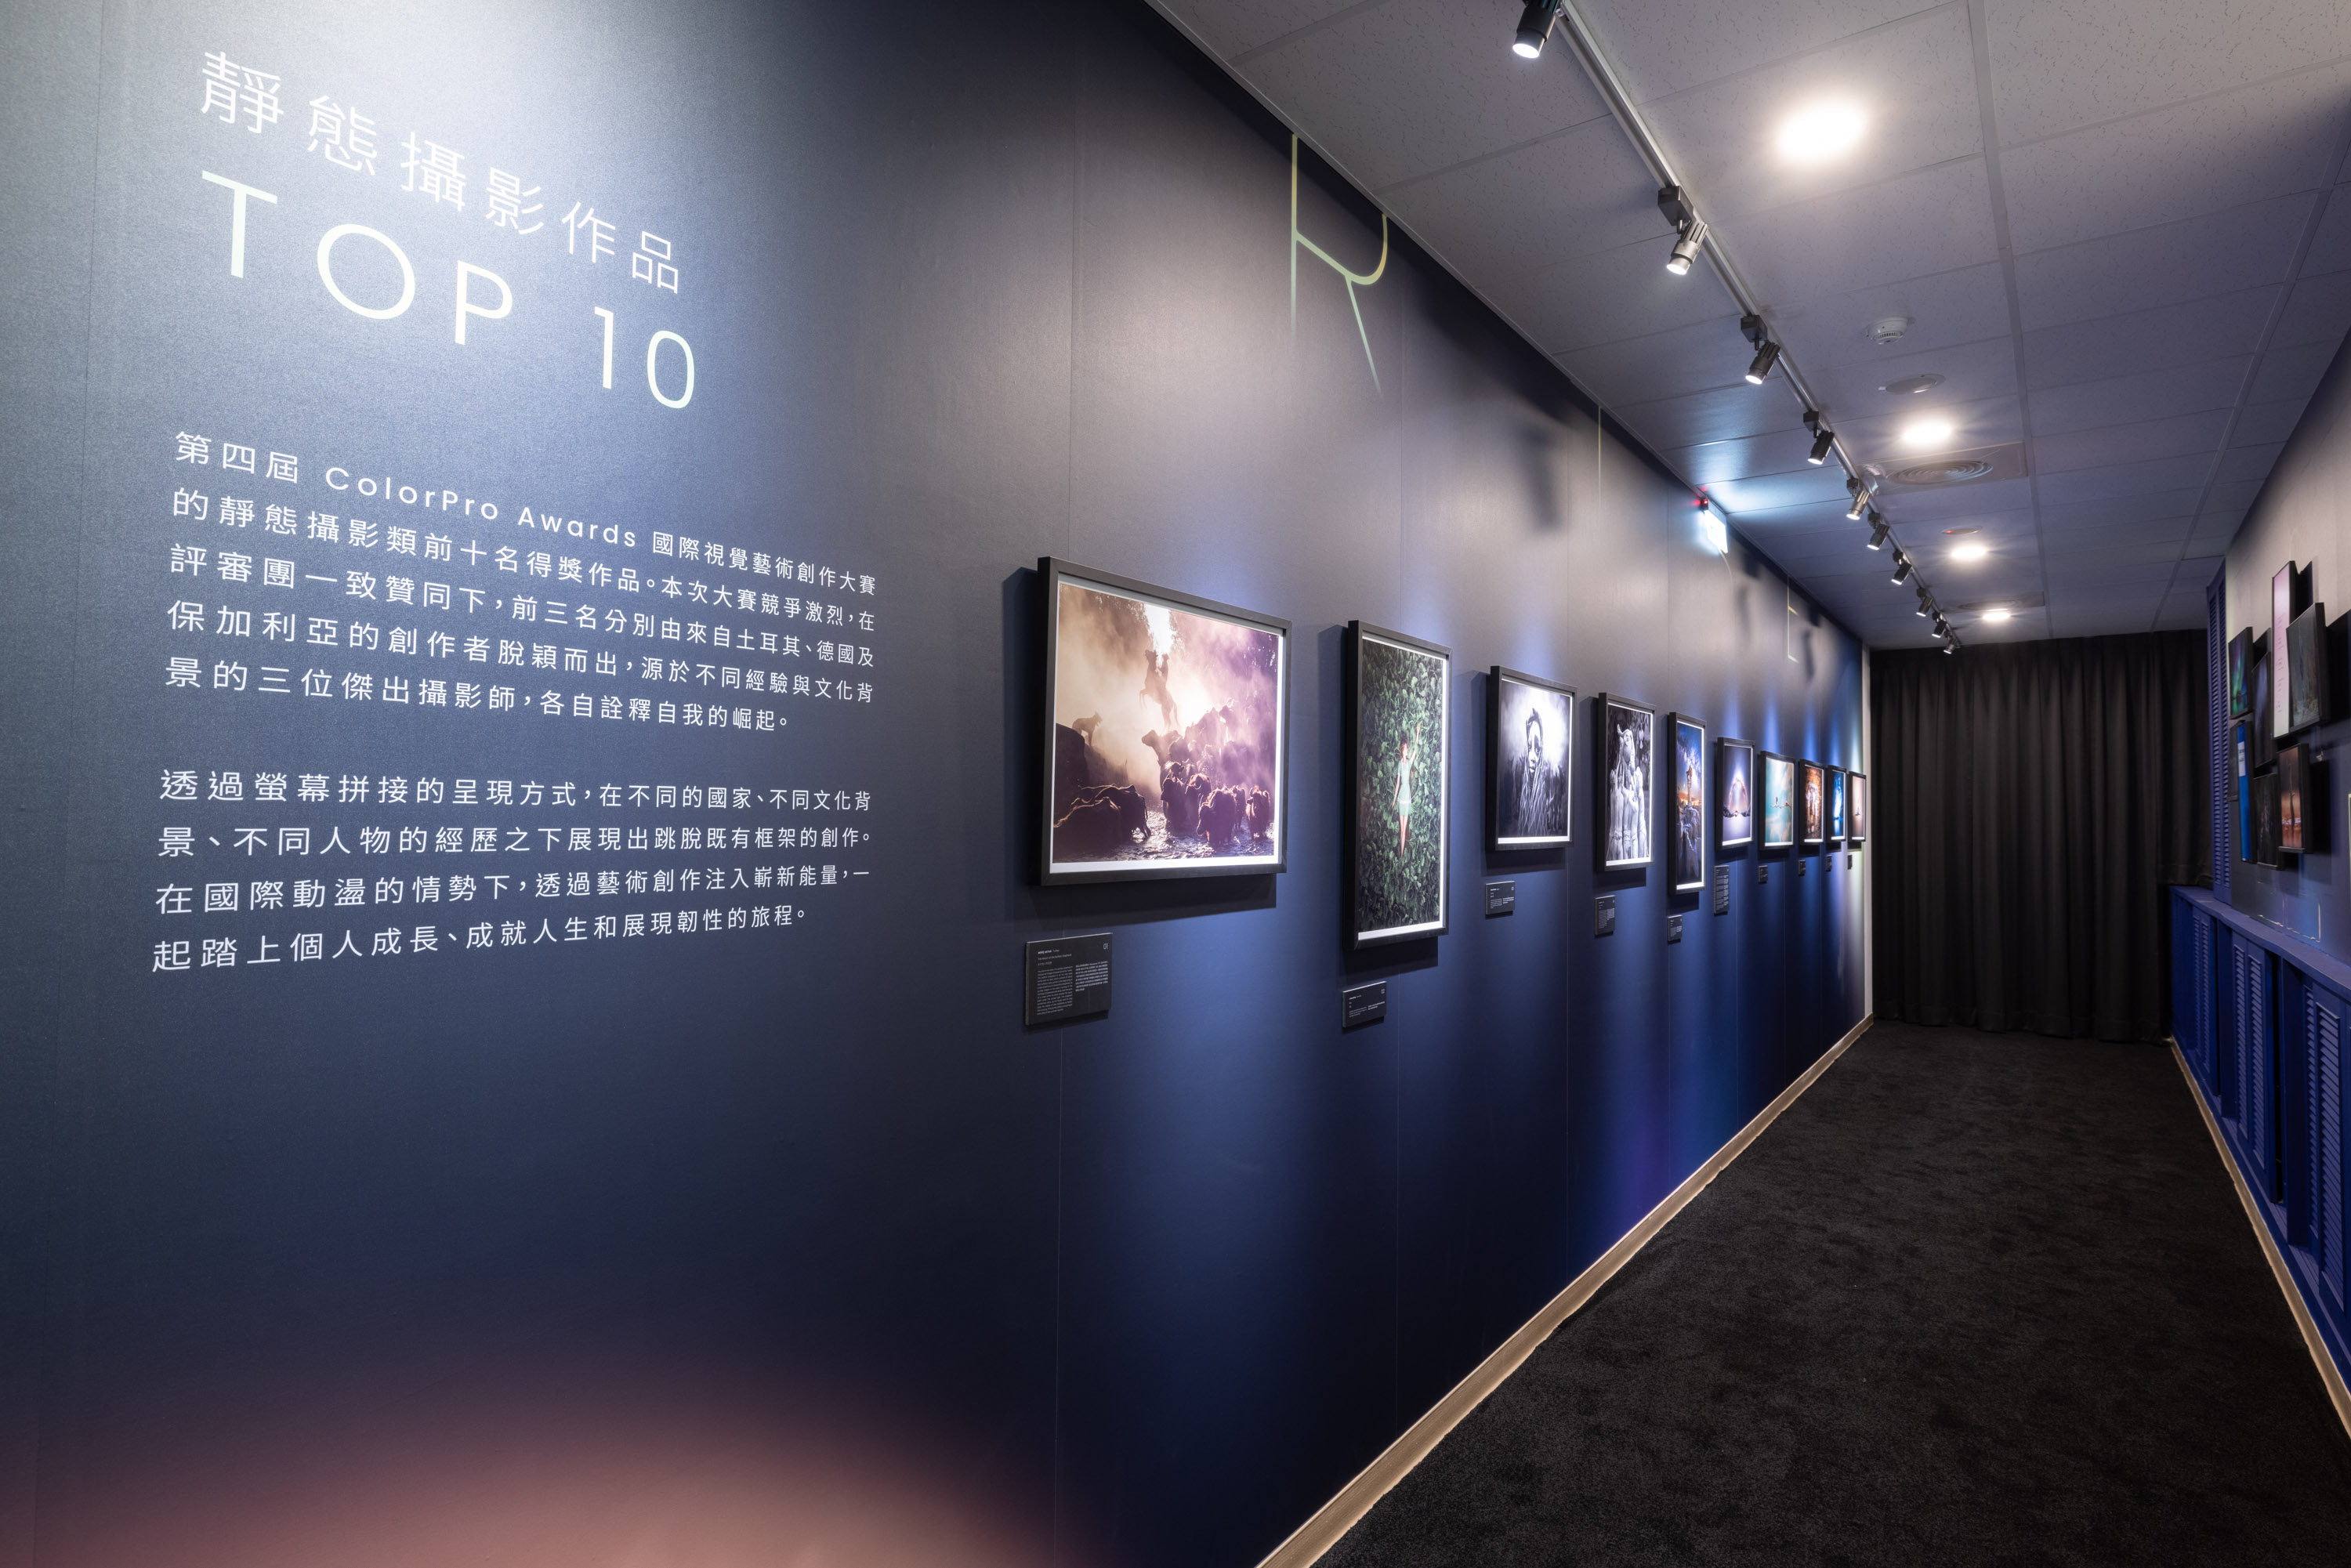 第四屆ColorPro Awards國際視覺藝術暨攝影展於臺灣研發中心展示全球入圍百大攝影作品。